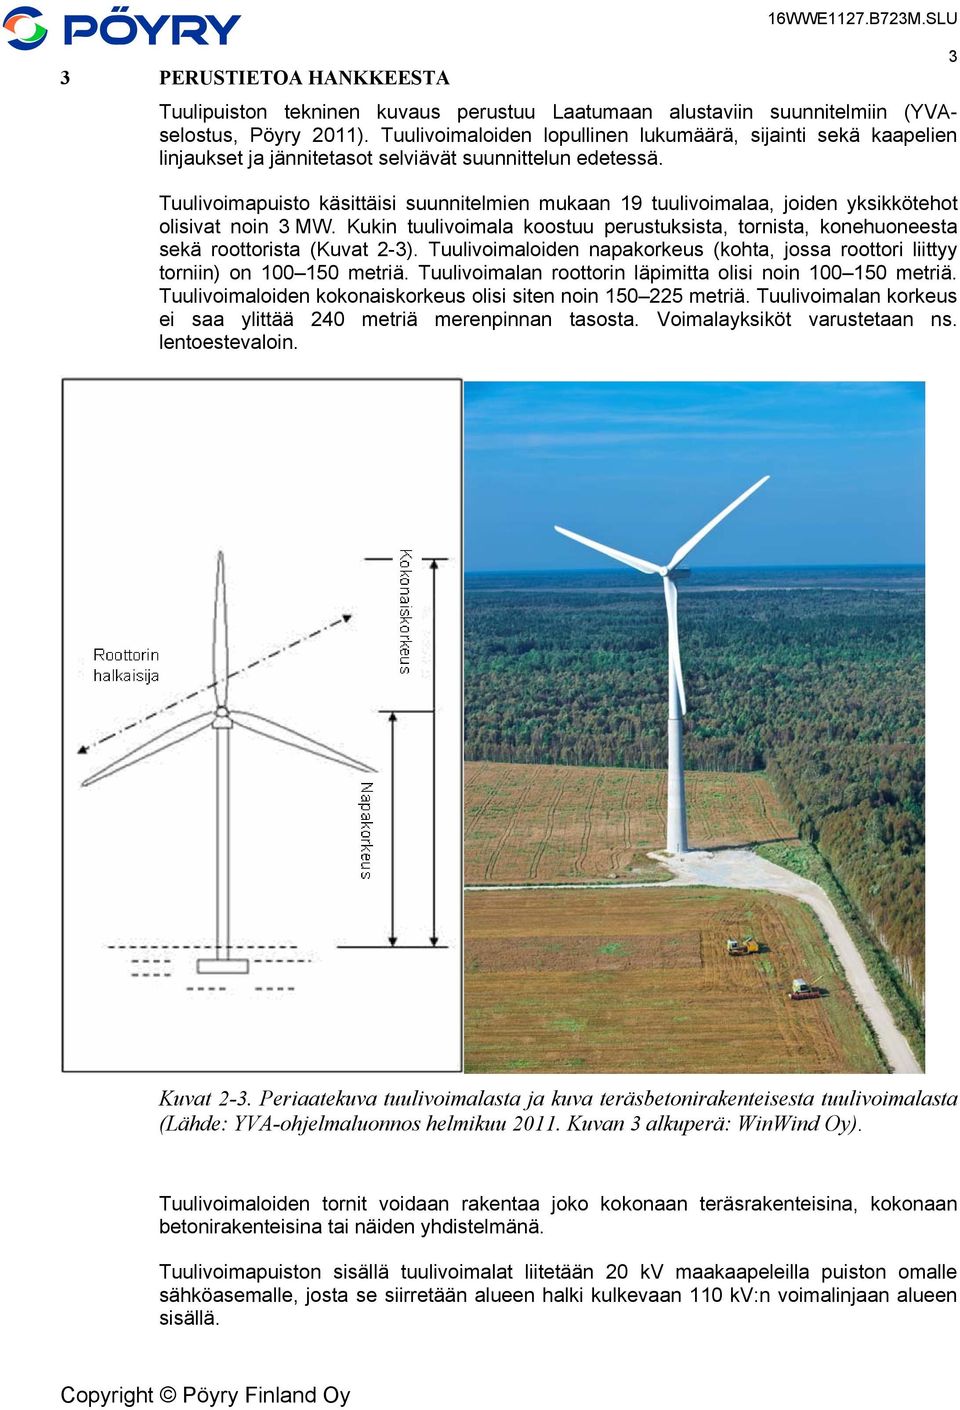 Tuulivoimapuisto käsittäisi suunnitelmien mukaan 19 tuulivoimalaa, joiden yksikkötehot olisivat noin 3 MW.